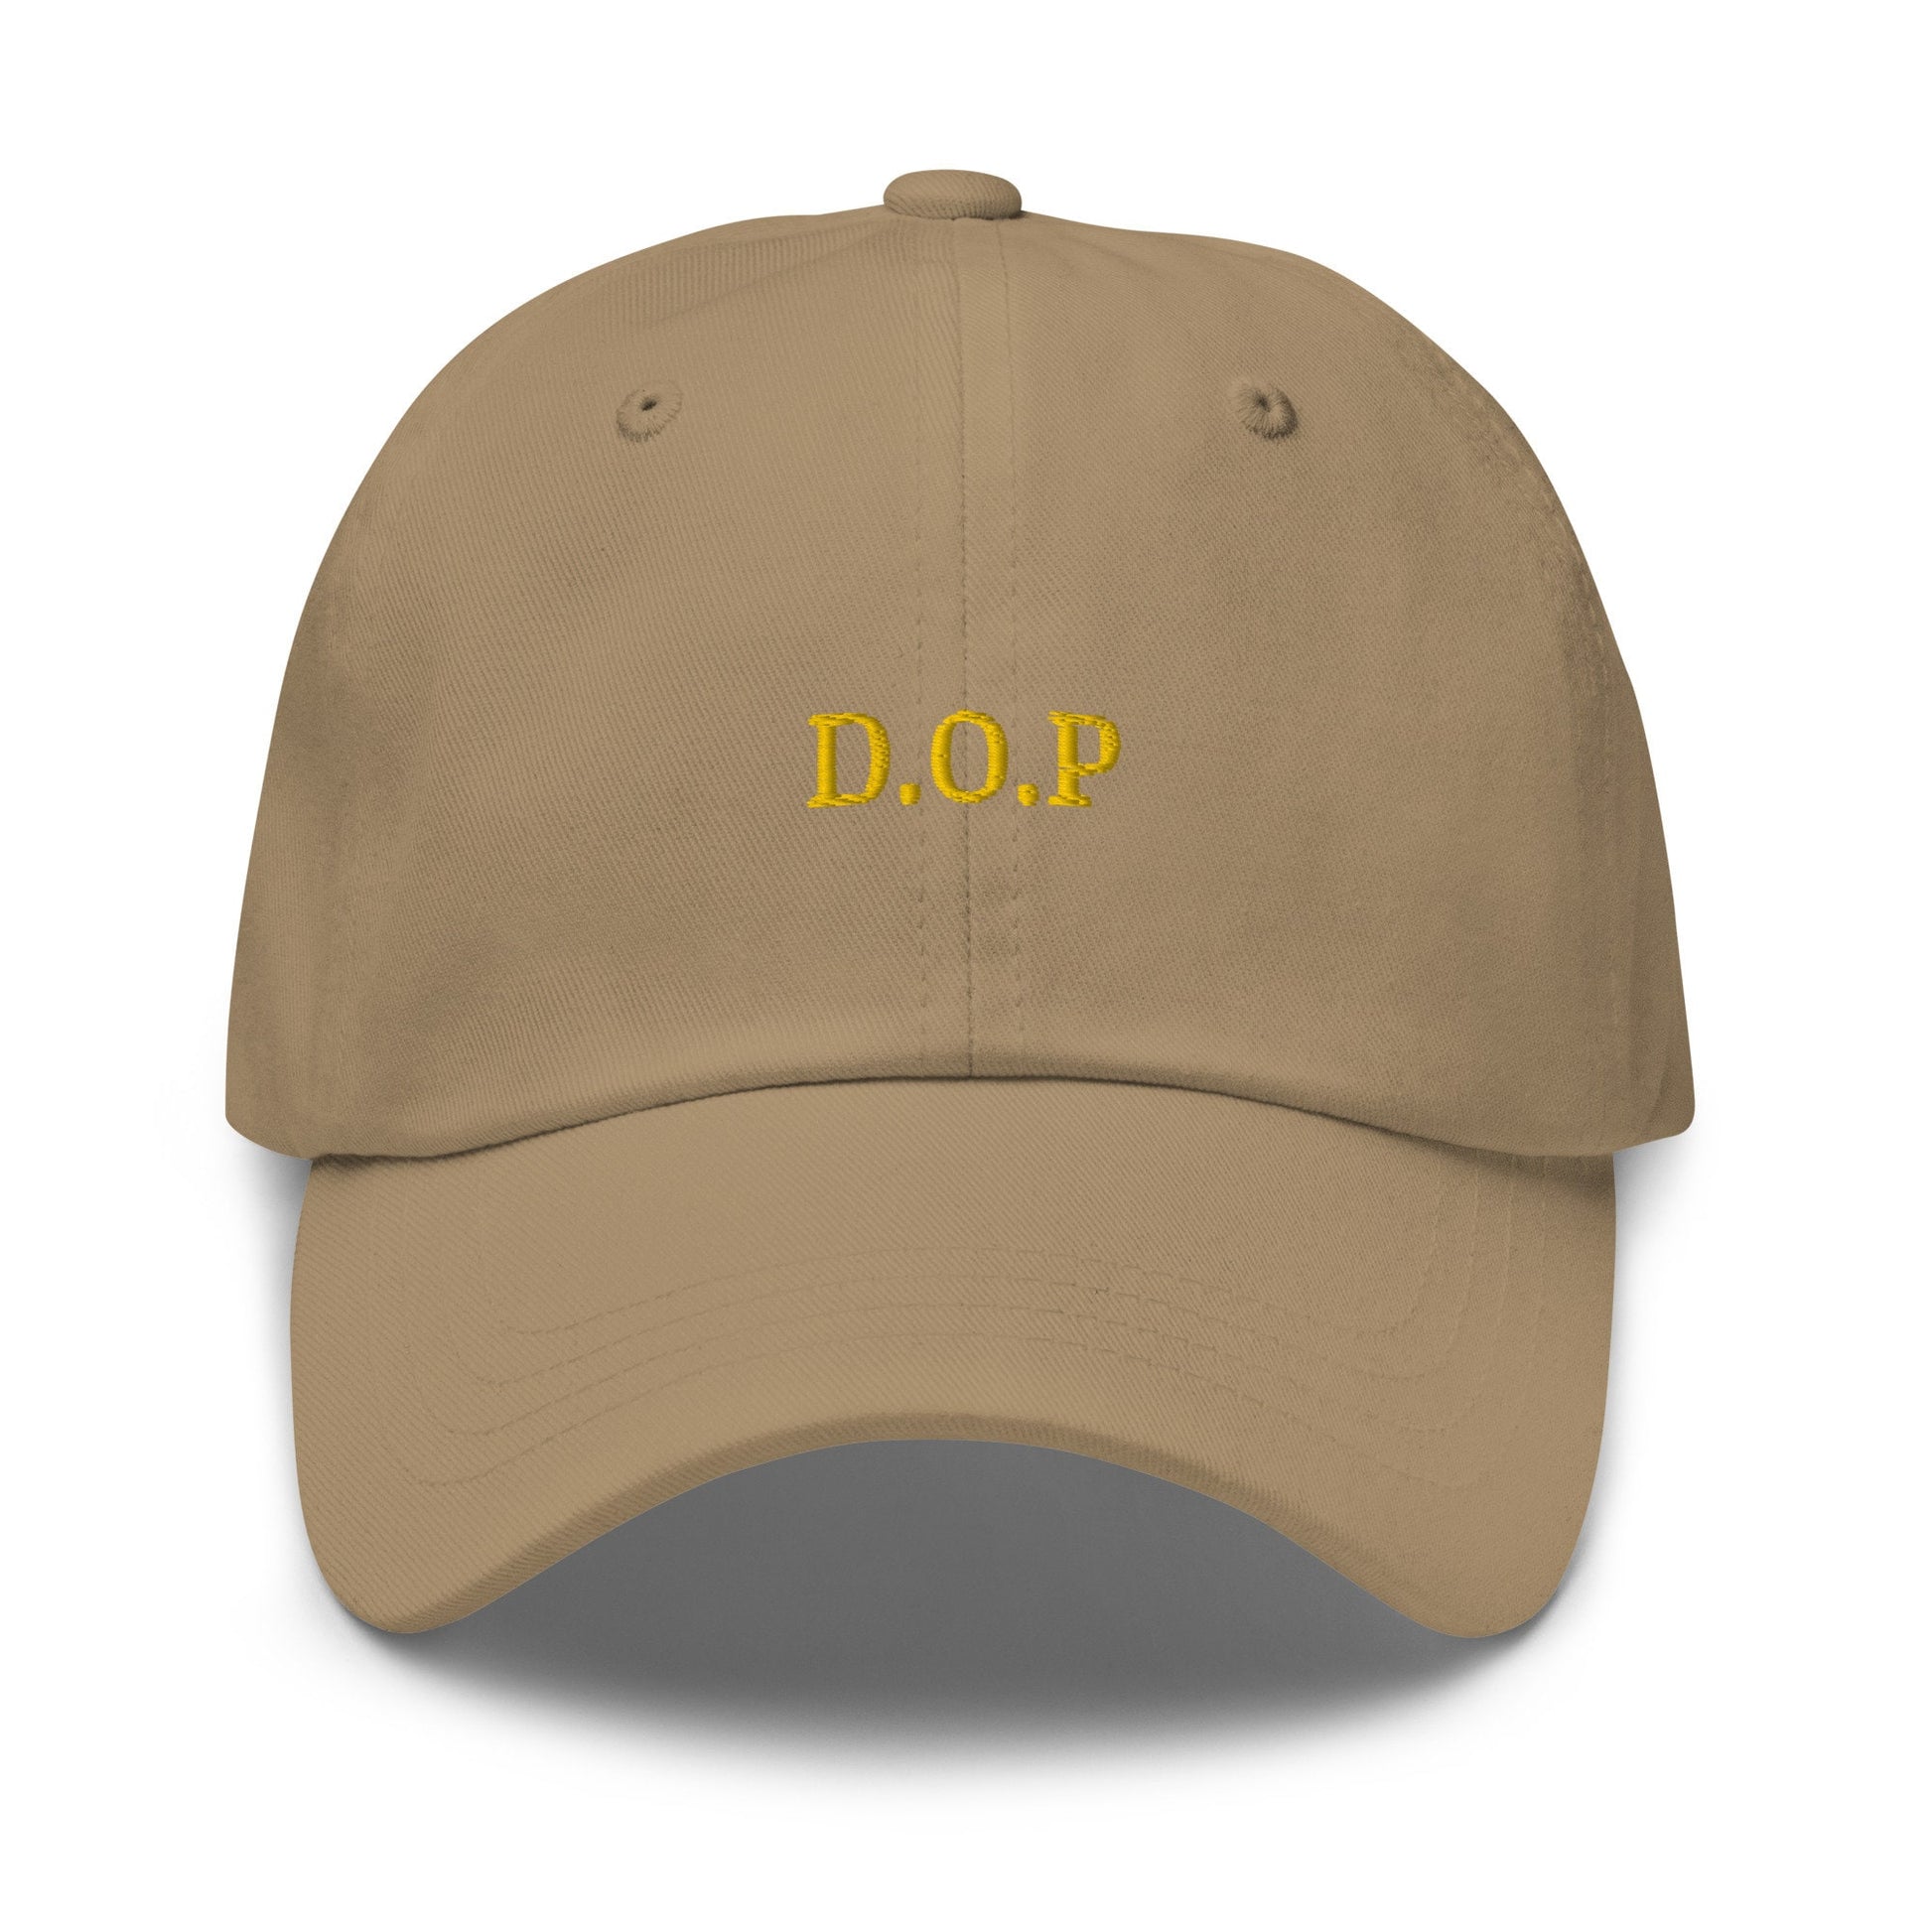 DOP Hat - Authentic Italian Food Fan gift - Denominazione di Origine Protetta - Cotton embroidered Cap